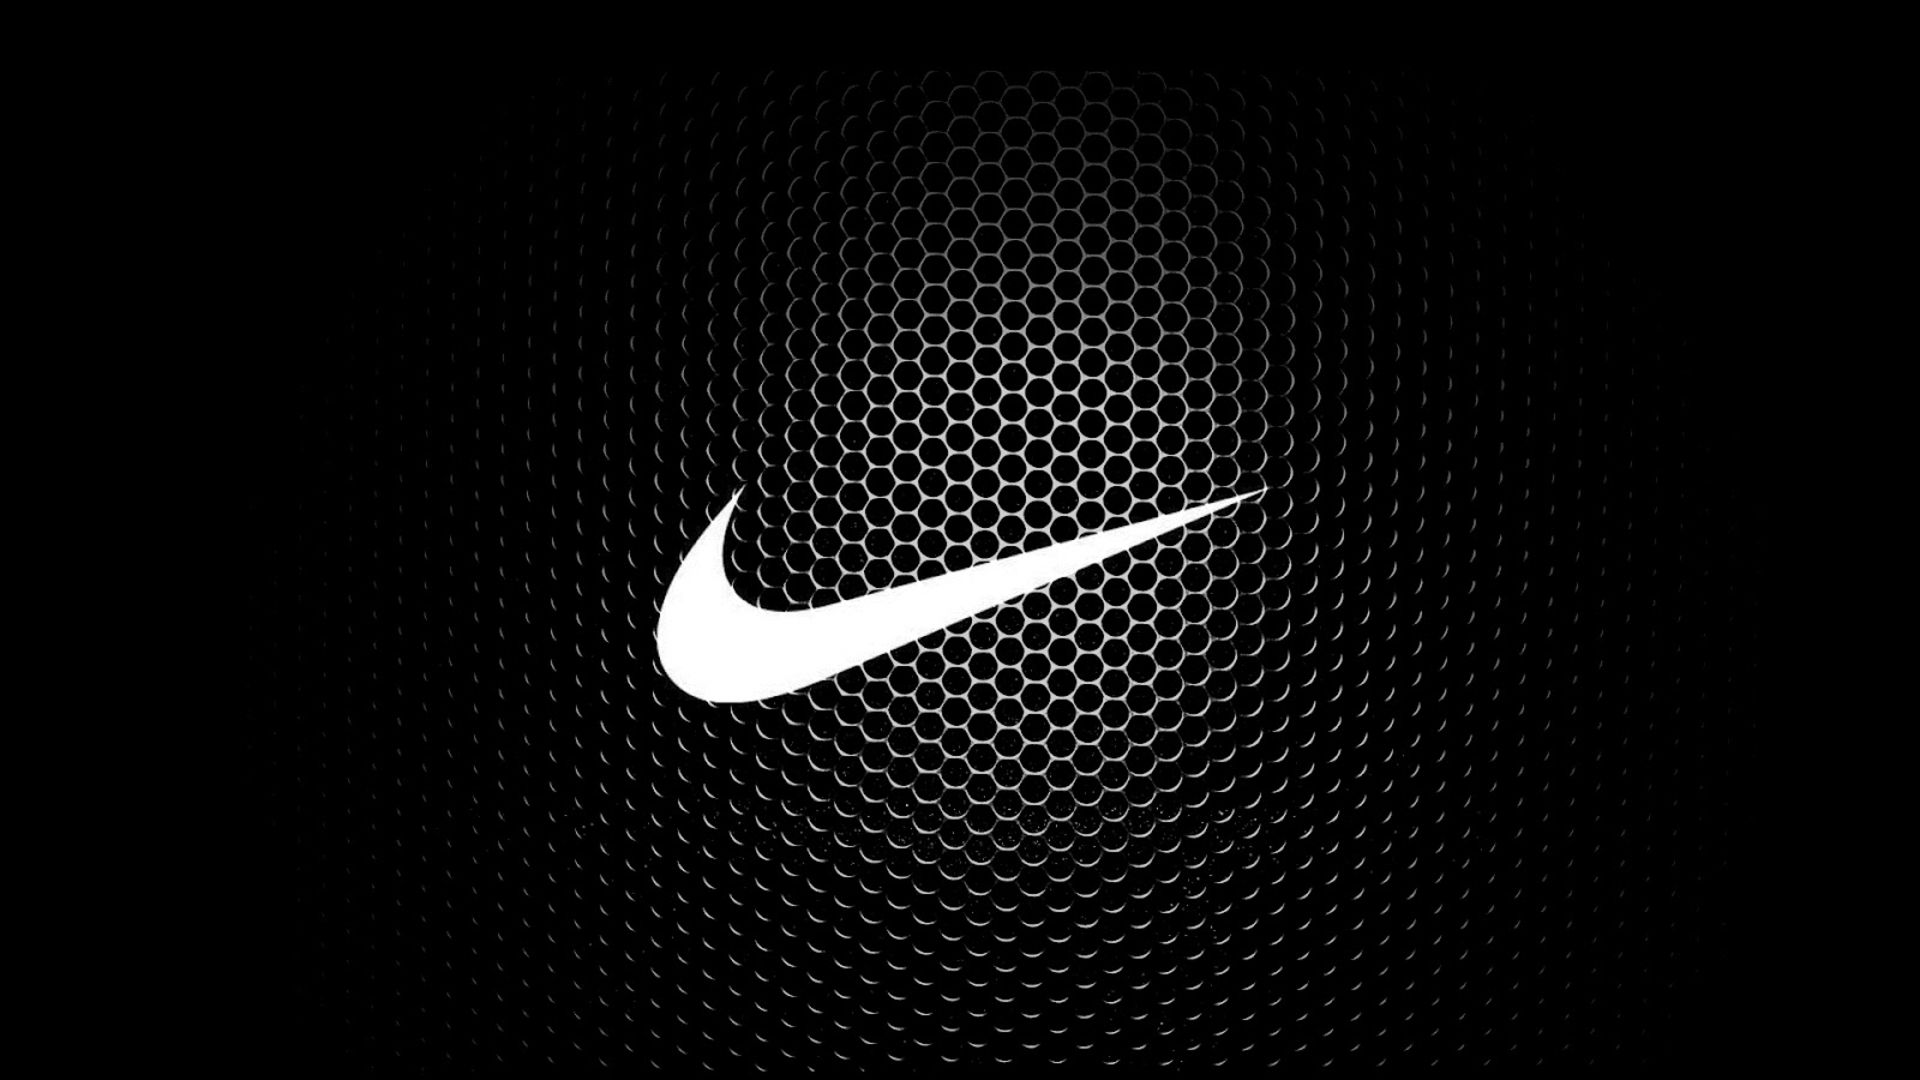 Hình nền : Nike, Đơn sắc, tối, Tác phẩm nghệ thuật, bản văn, Logo, kết cấu,  Cứ làm đi, nhãn hiệu, Hình nền máy tính, đen và trắng, Nhiếp ảnh đơn sắc,